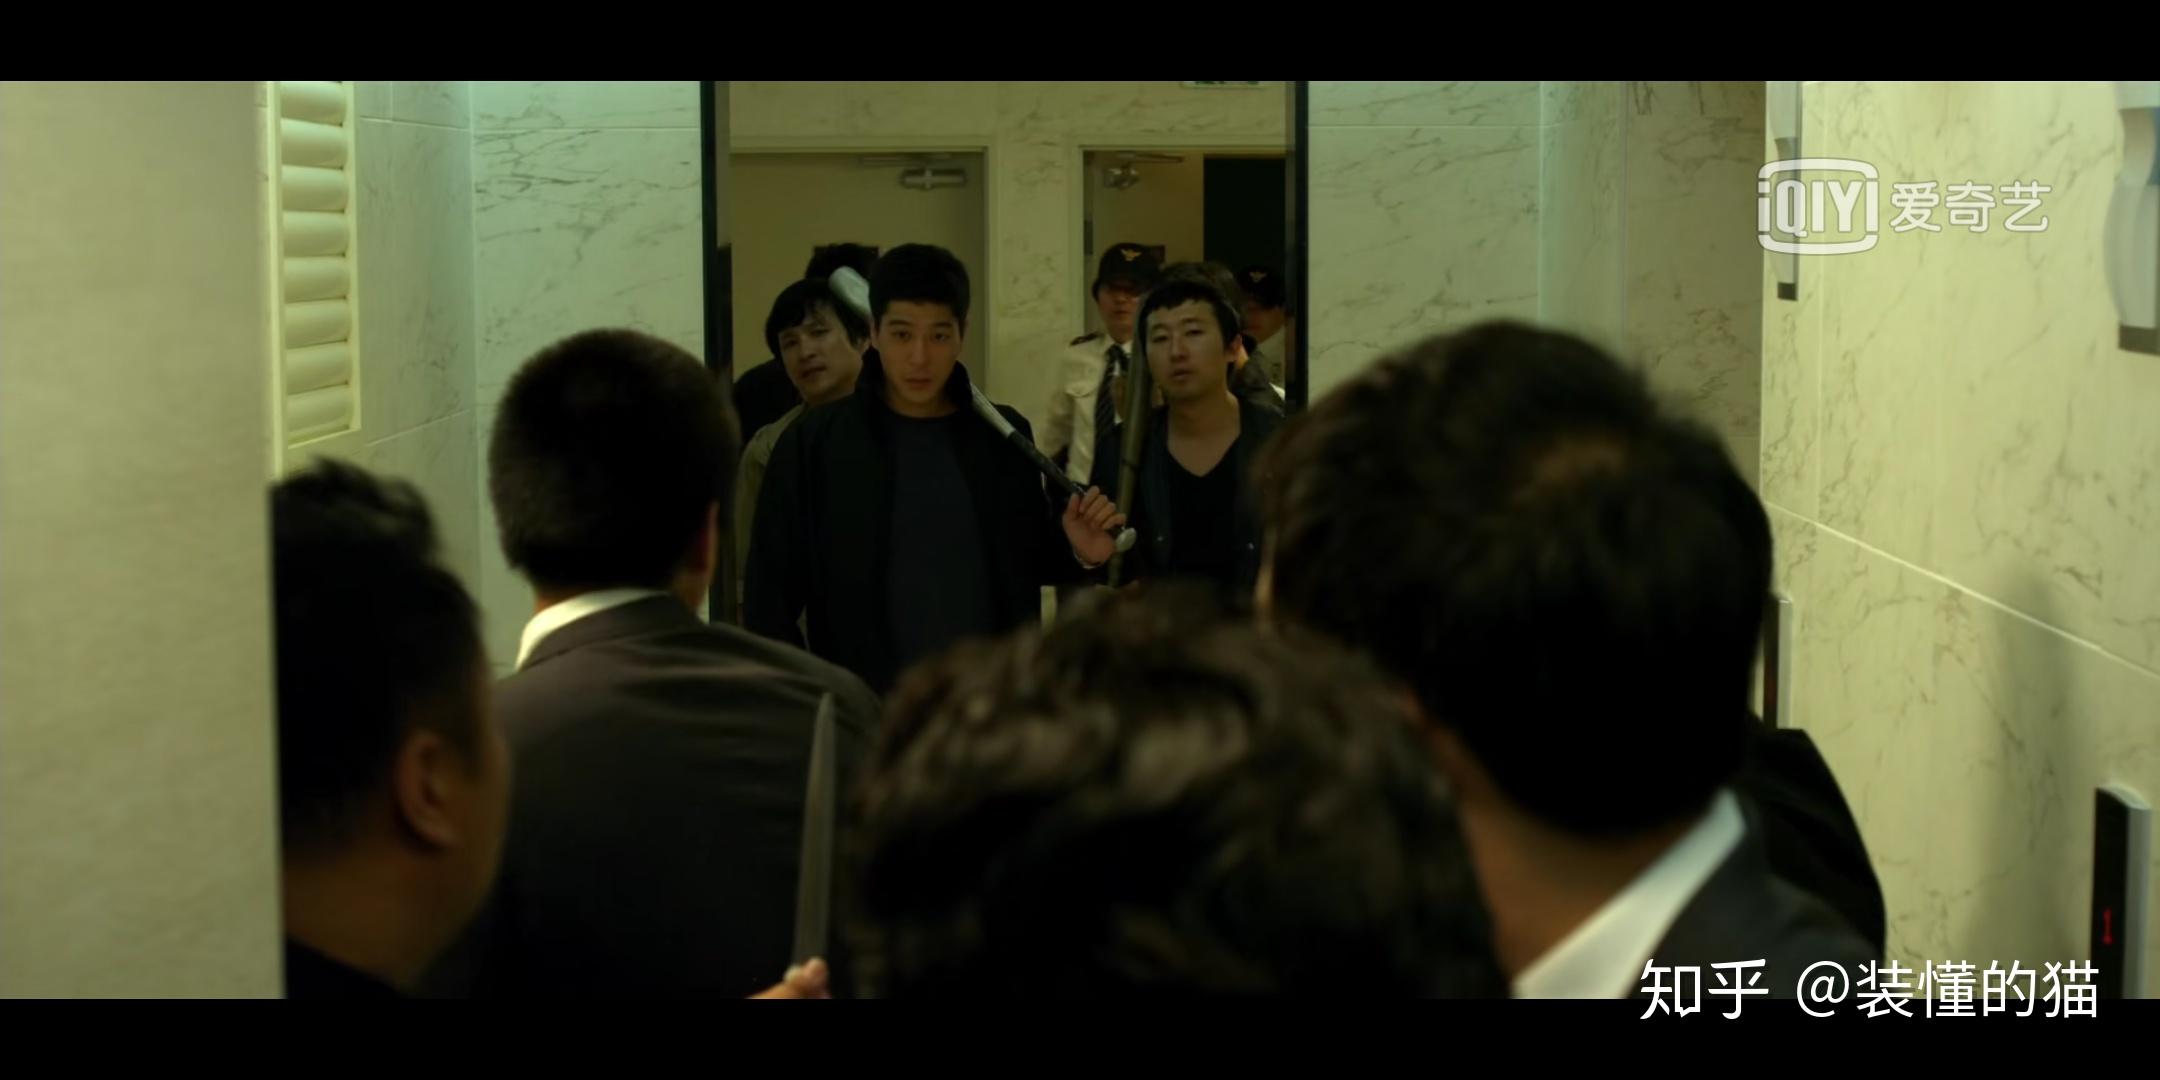 关于韩国电影《新世界》中,李仲久派人去杀李